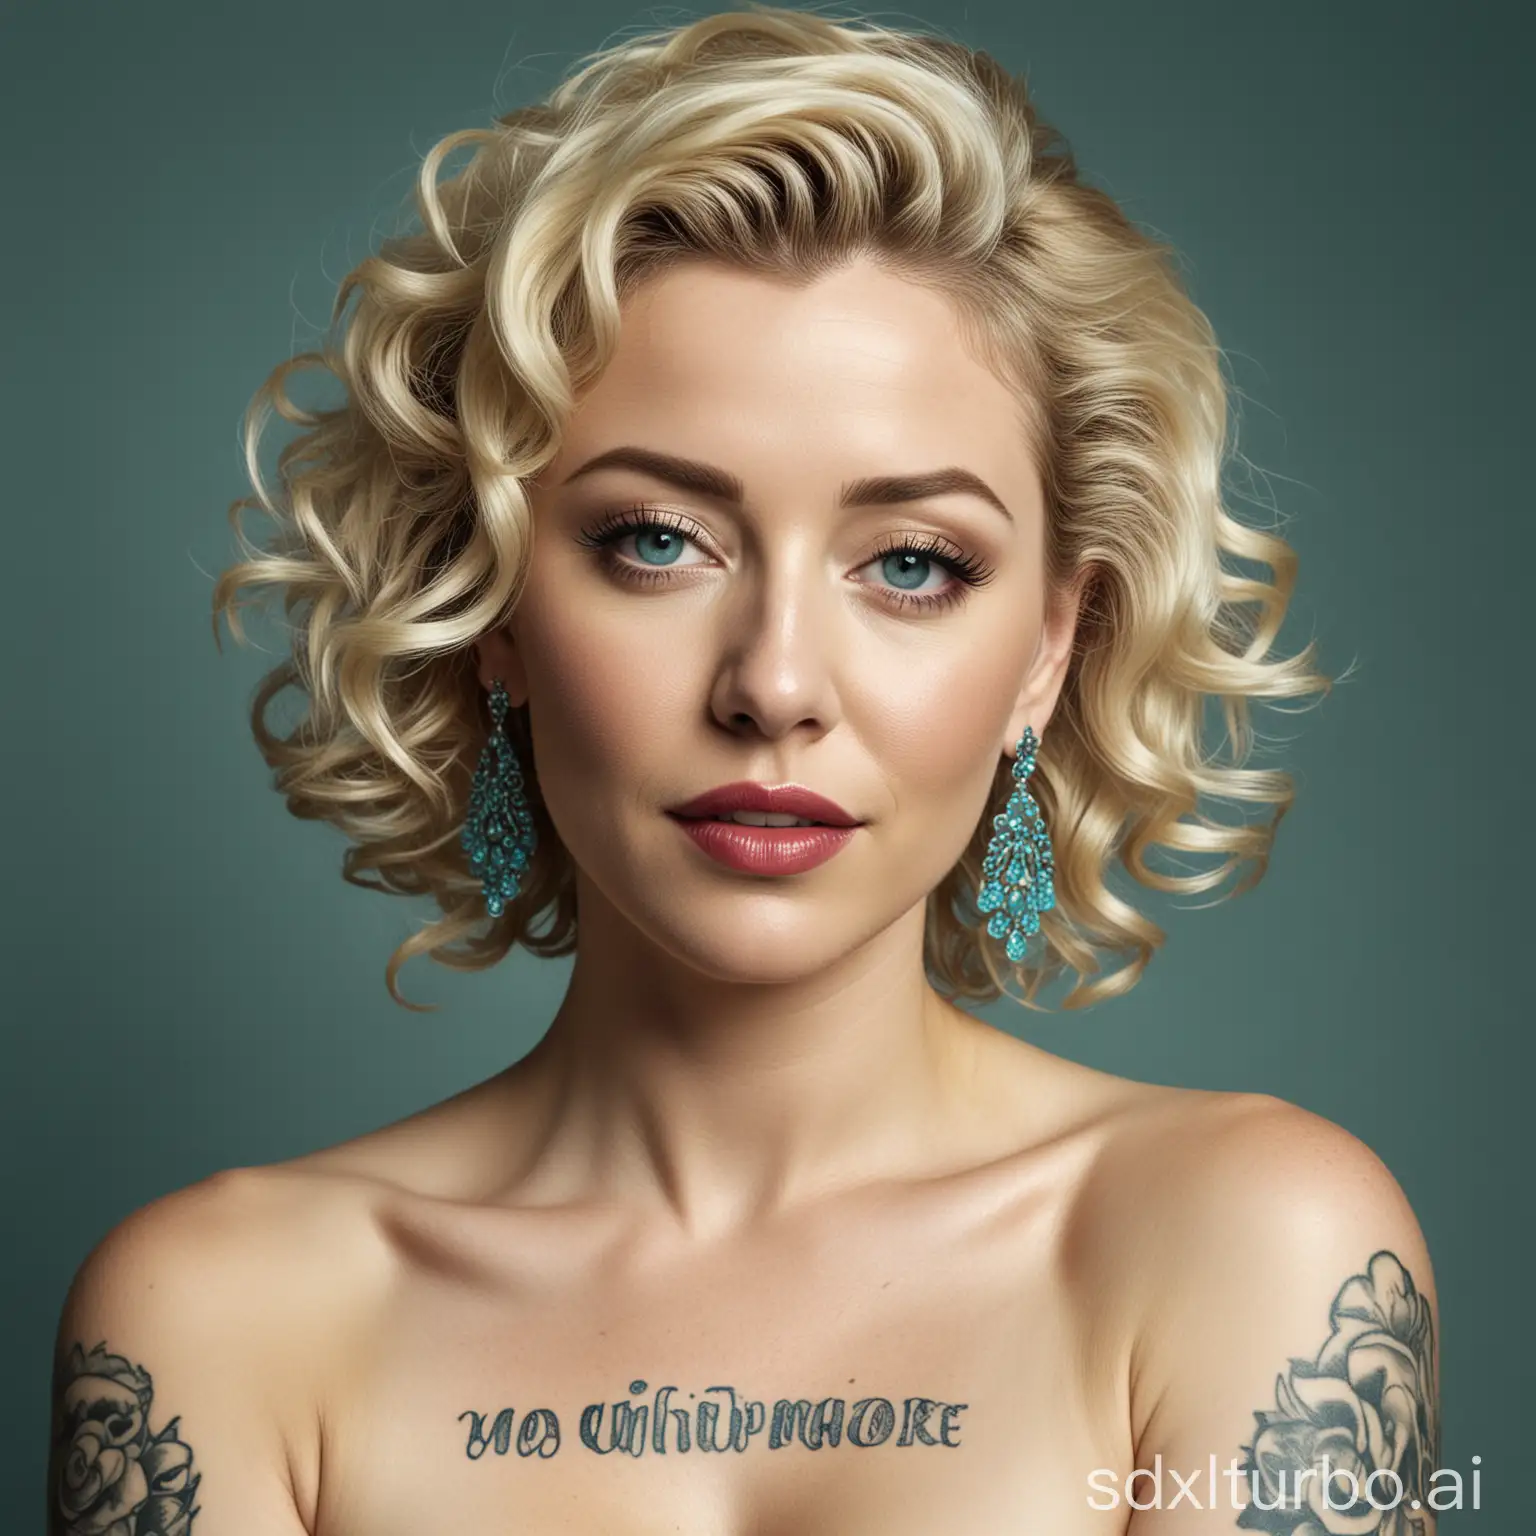 Graceful-Marilyn-Monroe-Lookalike-in-Monochromatic-Portrait